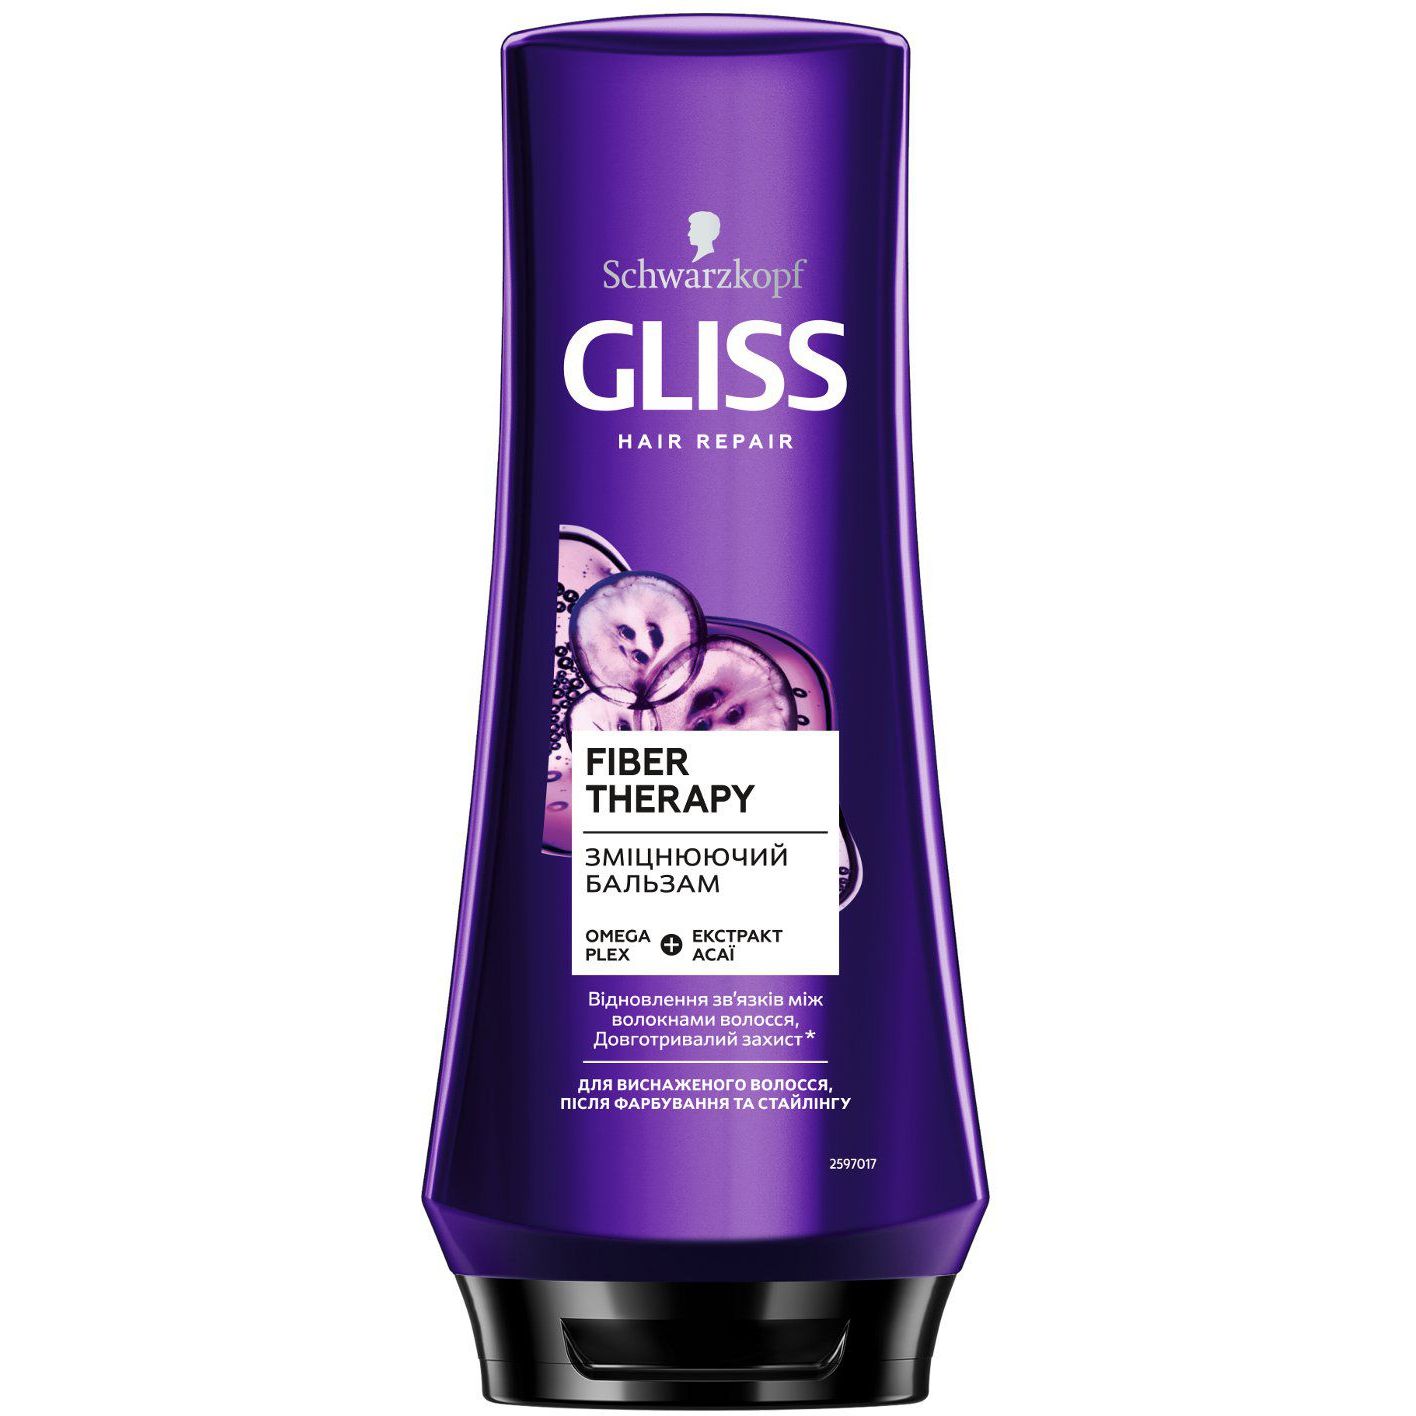 Бальзам Gliss Hair Repair Fiber Therapy для истощенных волос после окрашивания и стайлинга 200 мл - фото 1